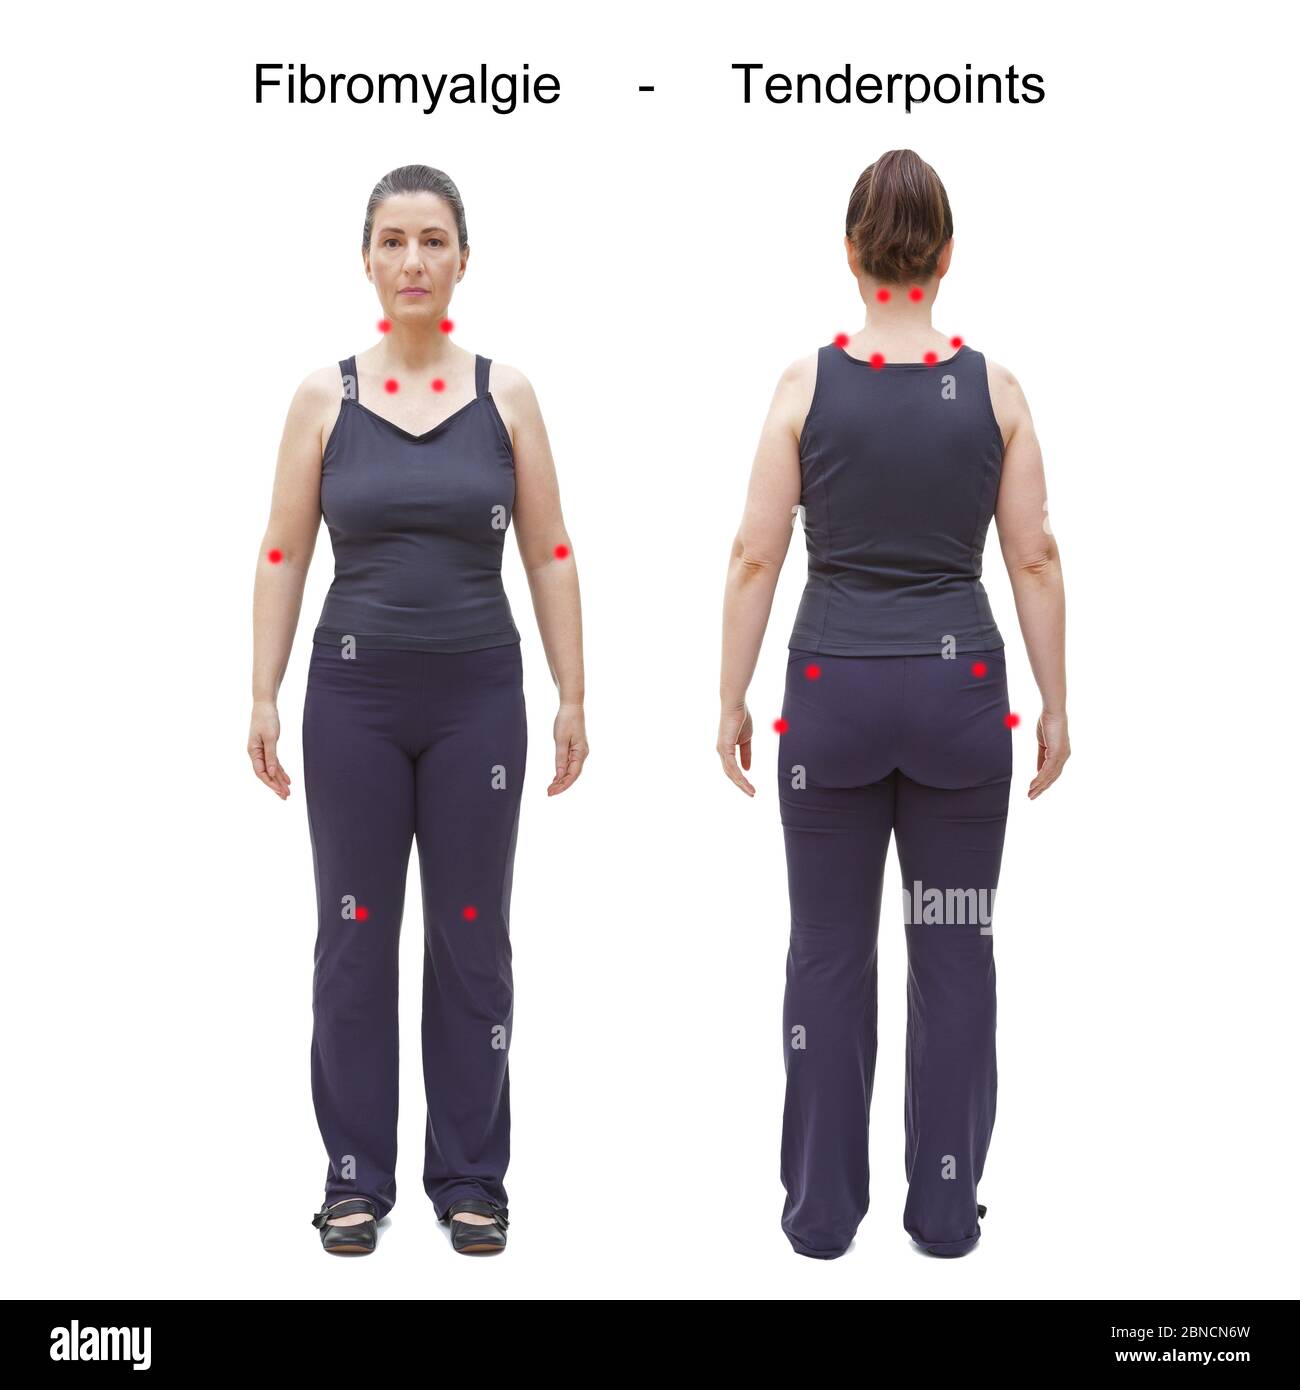 Die 18 Tender- oder Triggerpunkte von fibromyalgie / Fibromyalgie, gekennzeichnet durch rote Flecken am Körper einer Frau, deutscher Text. Stockfoto